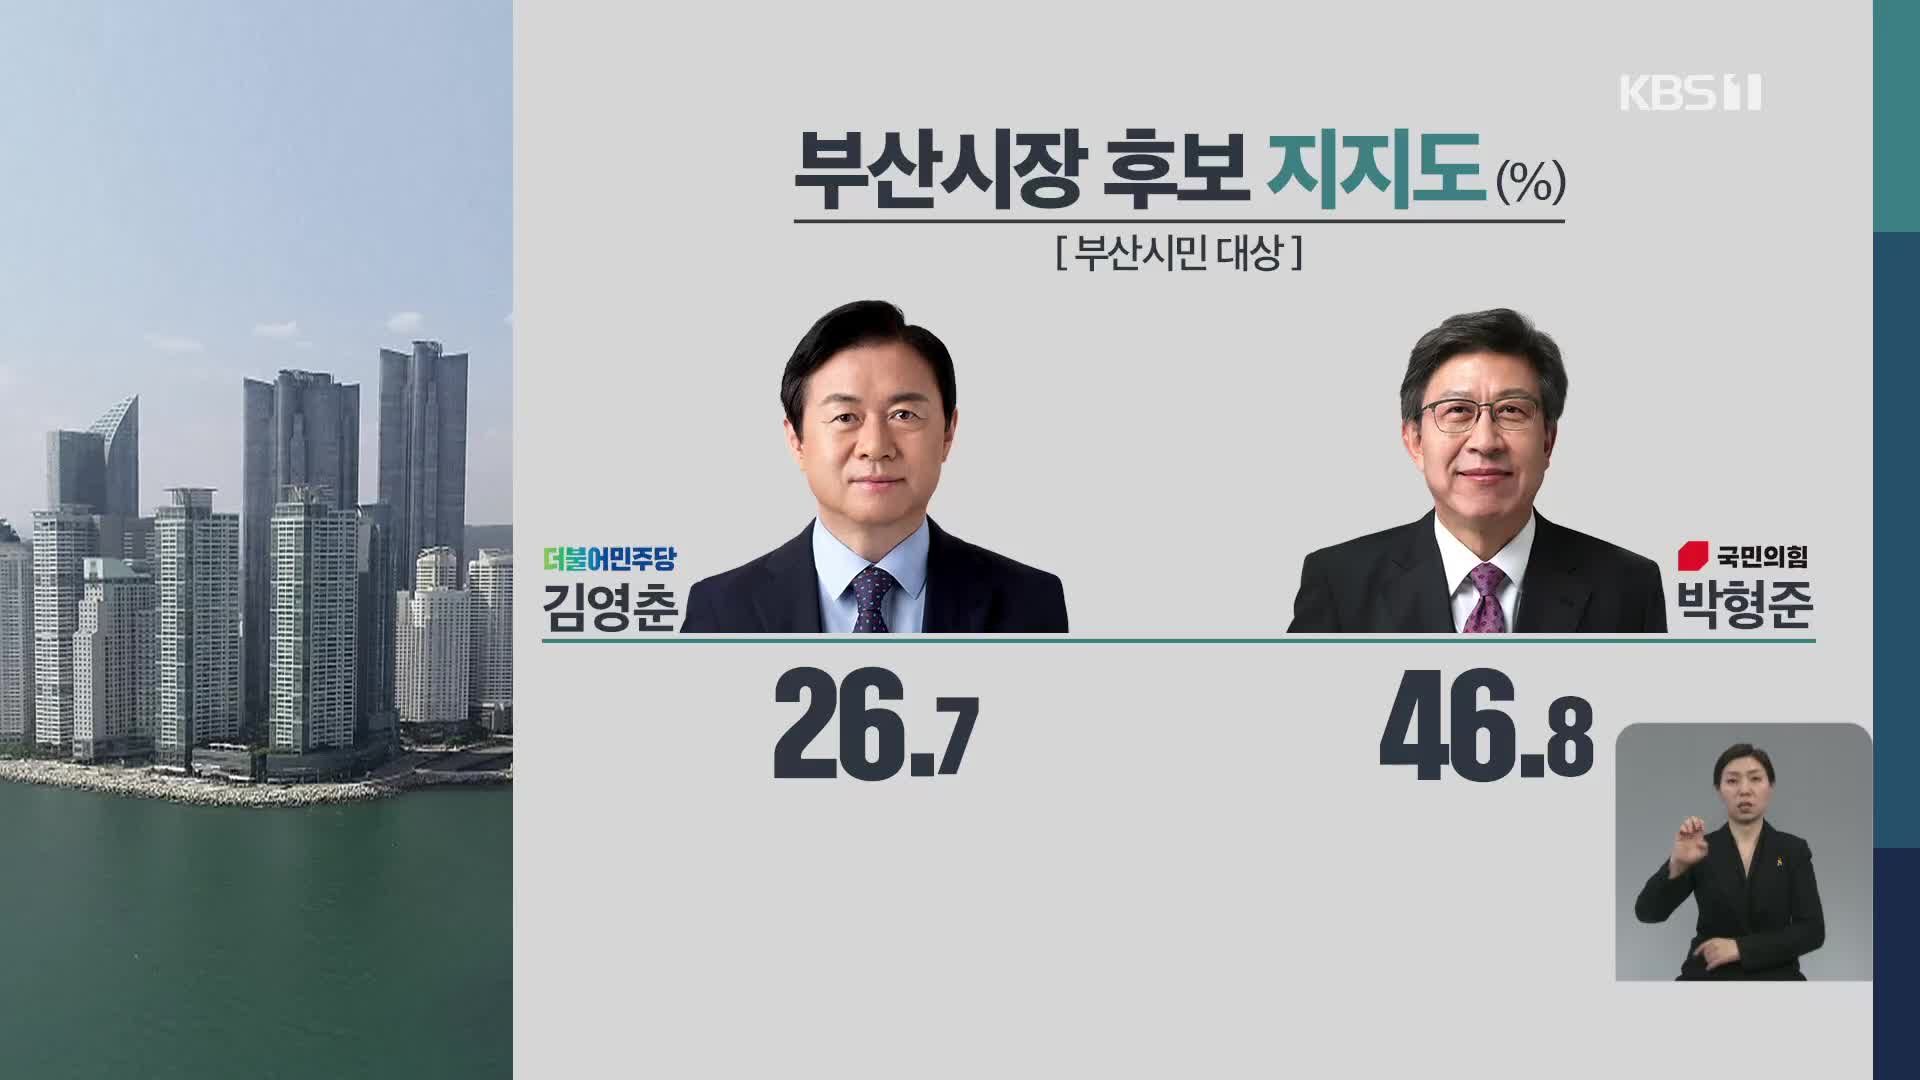 [부산 여론조사] 김영춘 26.7% 박형준 46.8%…“격차 더 벌어져”